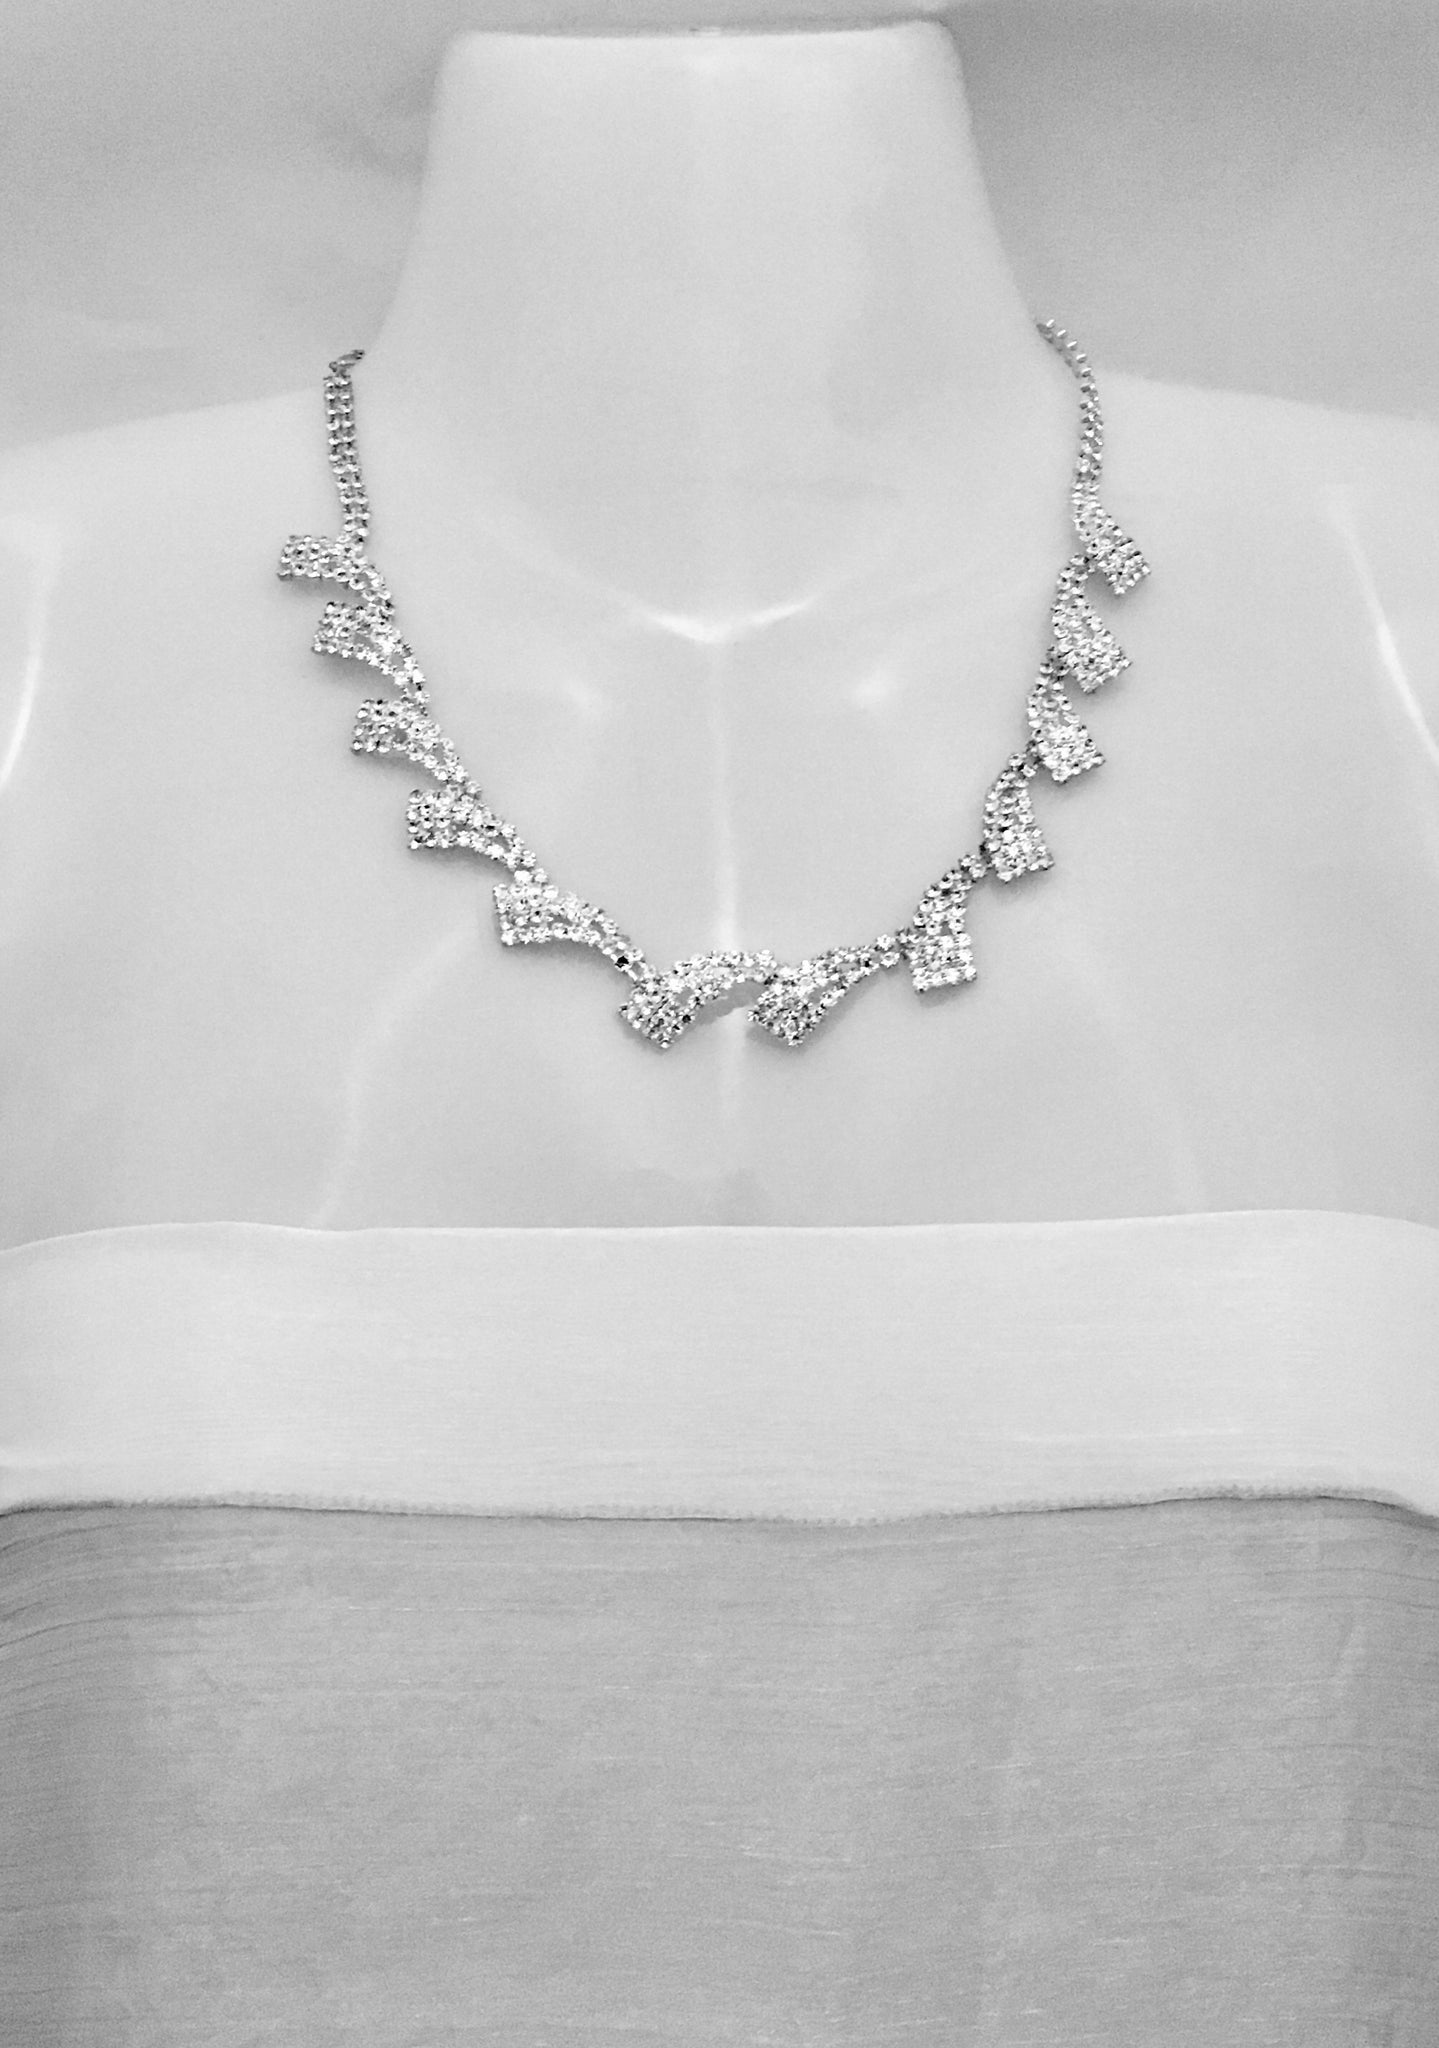 Red Shiny Ladies Set of Earrings Necklace Bracelet Diamante Women Jewellery  | eBay